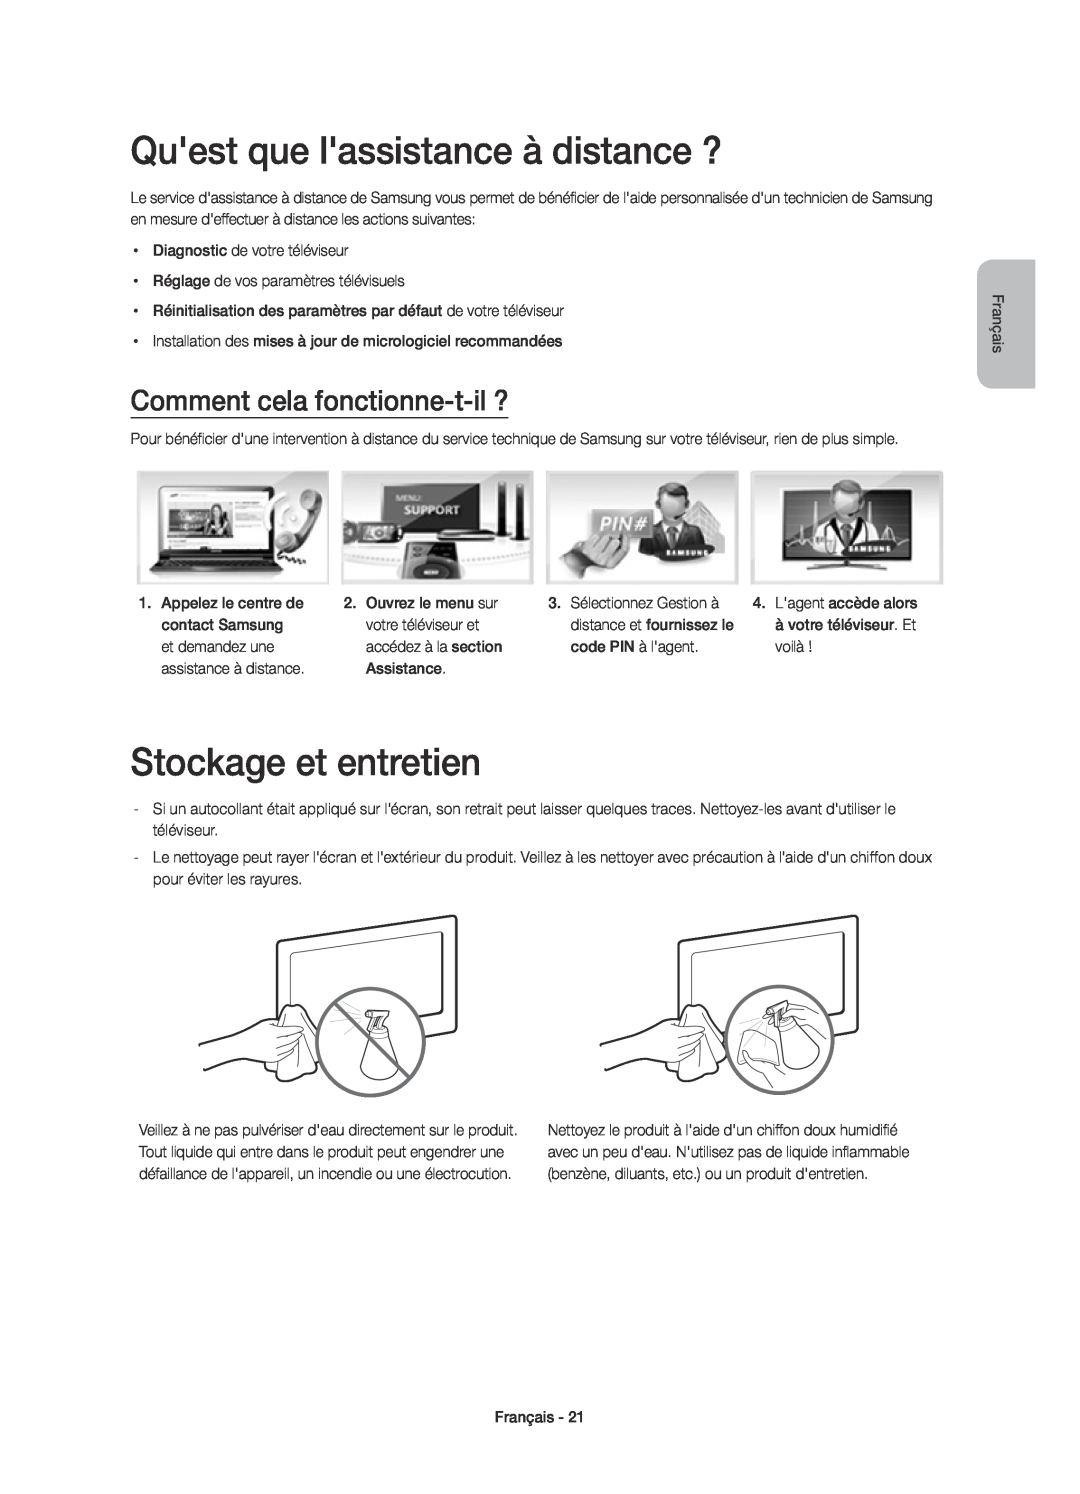 Samsung UE48H6410SSXXC manual Quest que lassistance à distance ?, Stockage et entretien, Comment cela fonctionne-t-il ? 